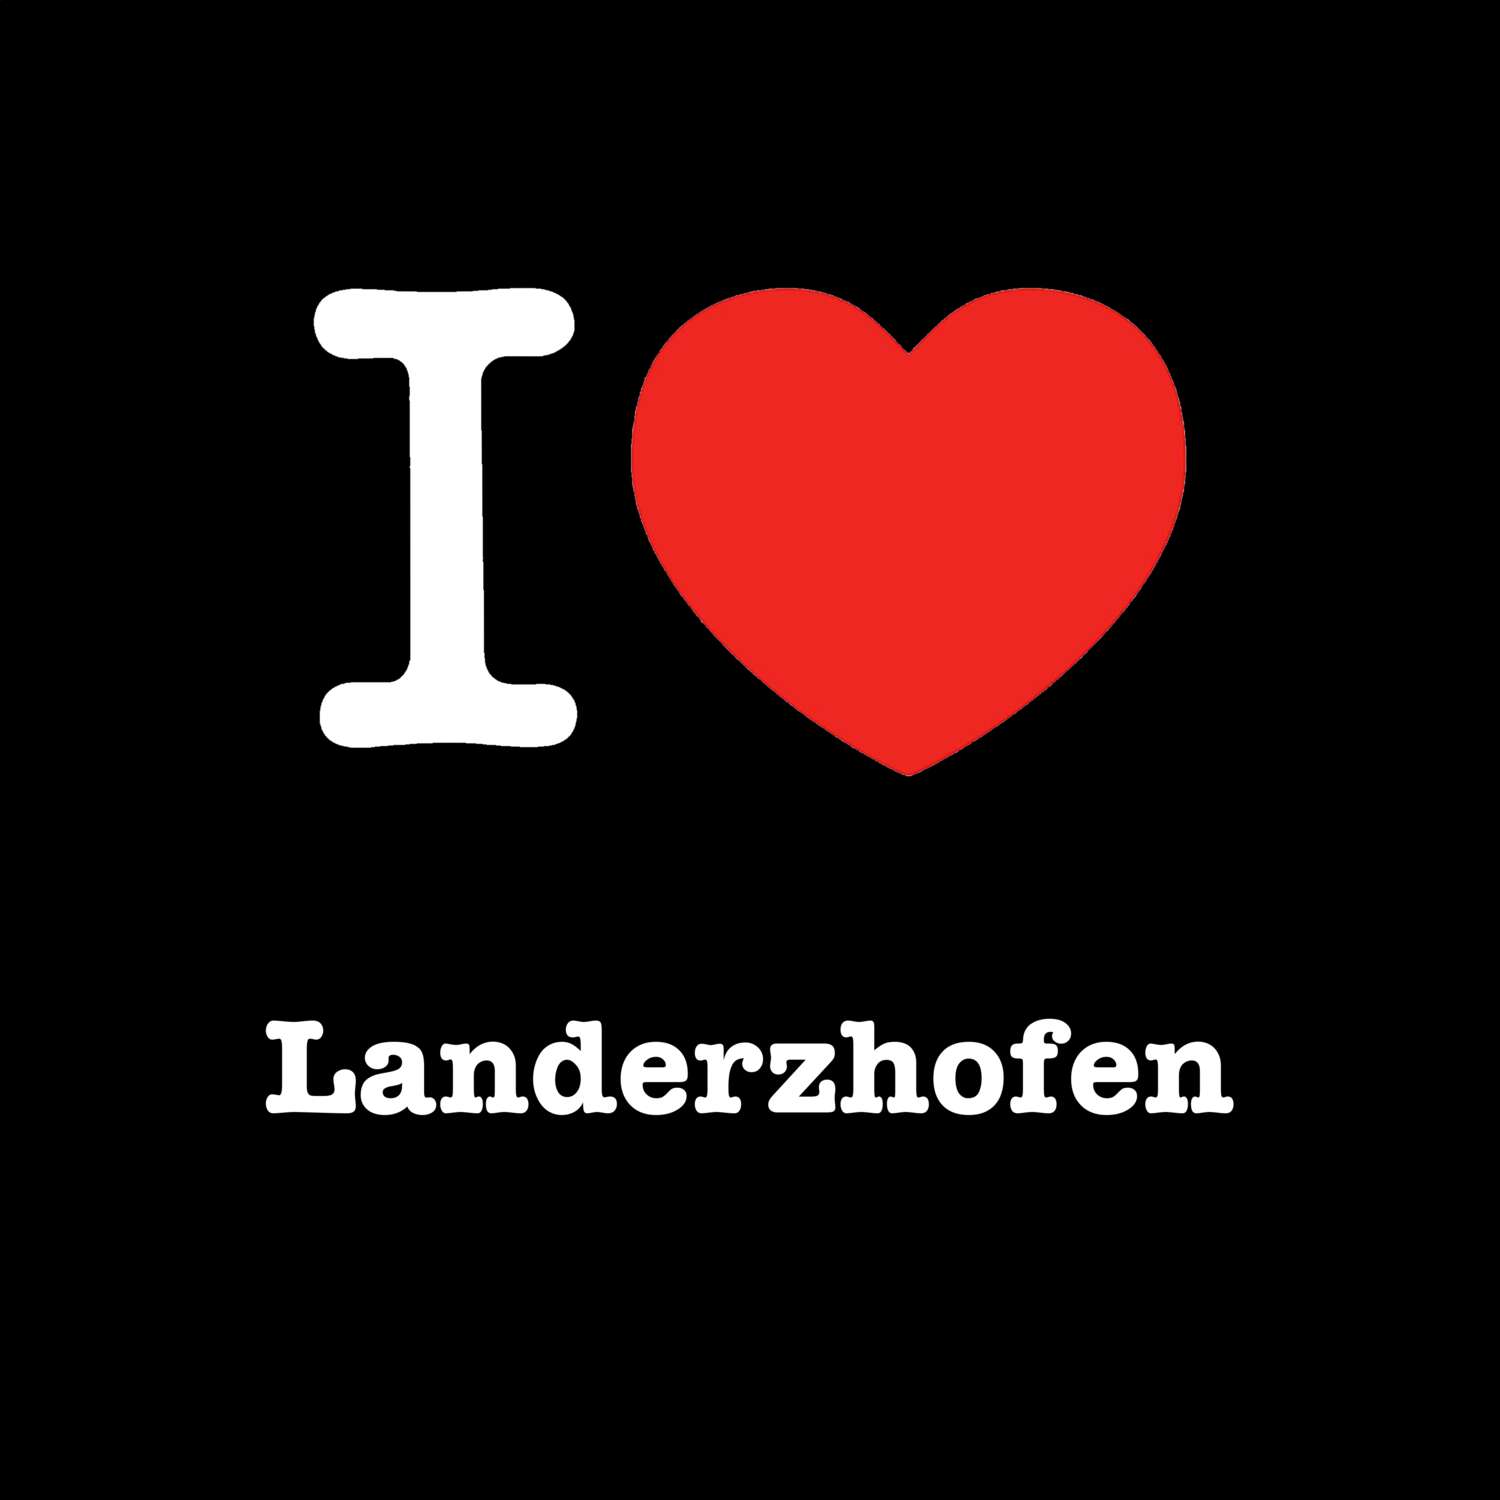 Landerzhofen T-Shirt »I love«